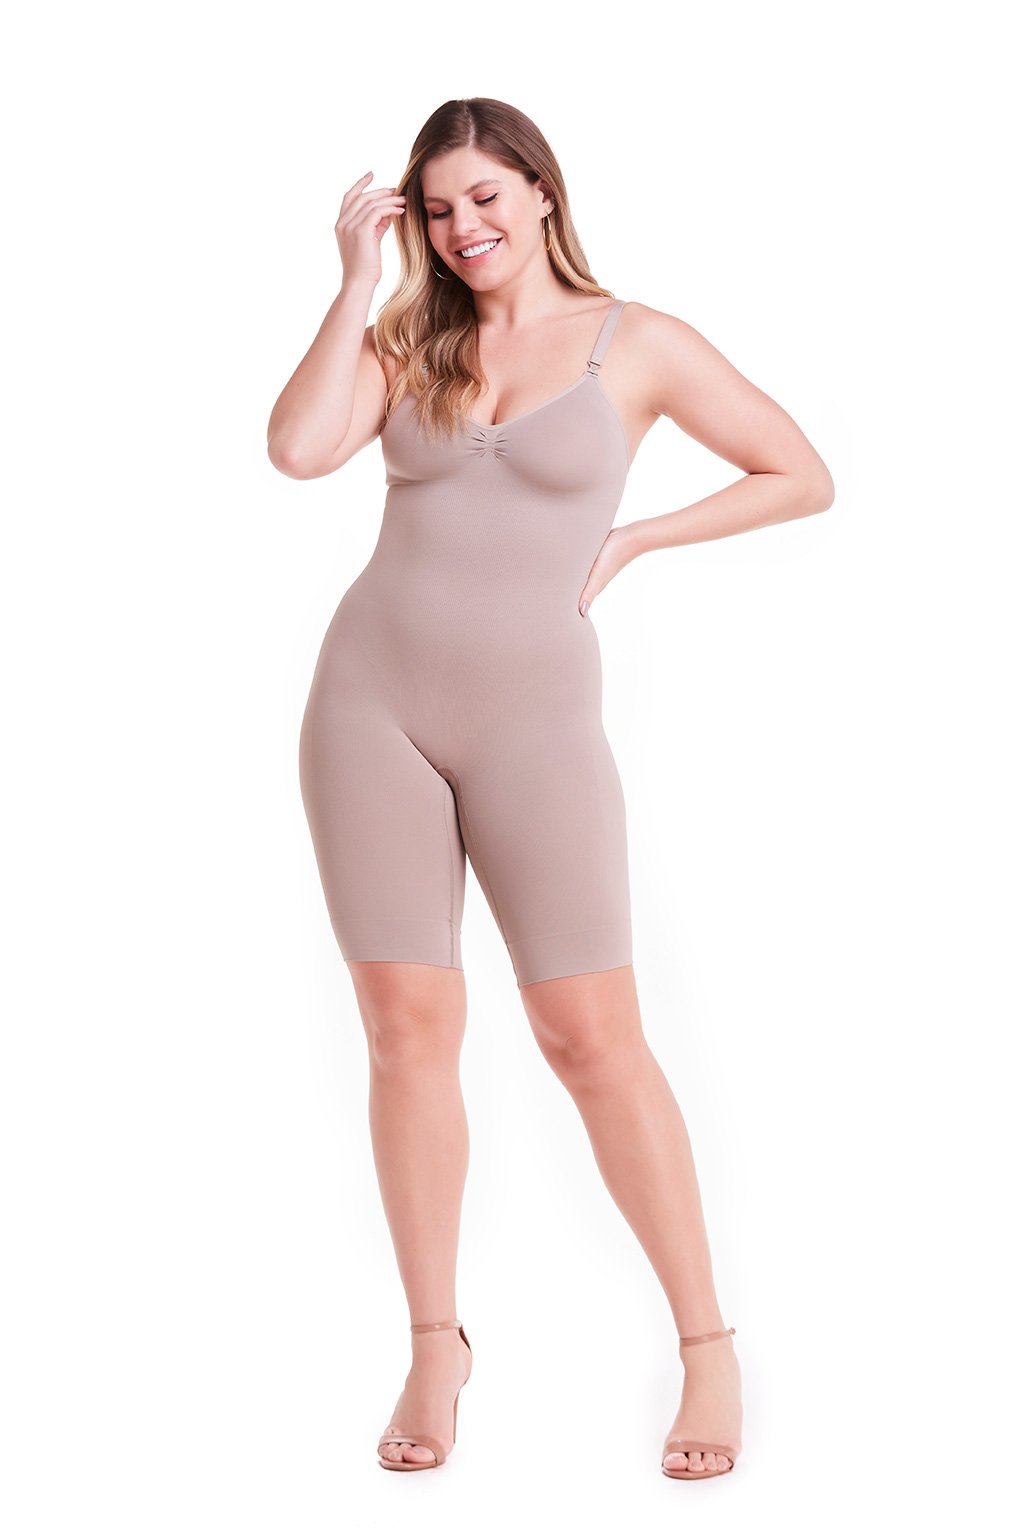 Bermuda Style Body Shaper, Women Sliming Underwear, Shapewear